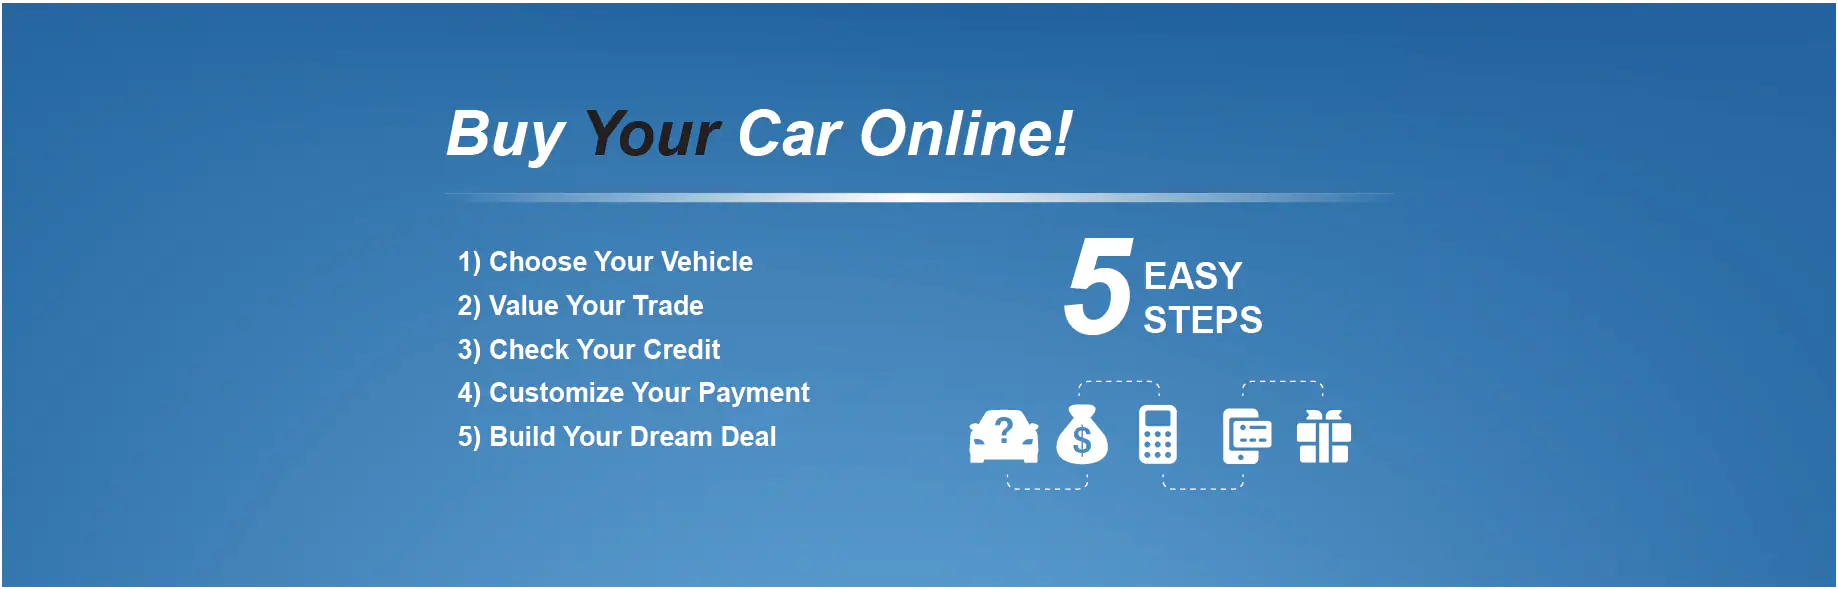 Buy Online five easy steps